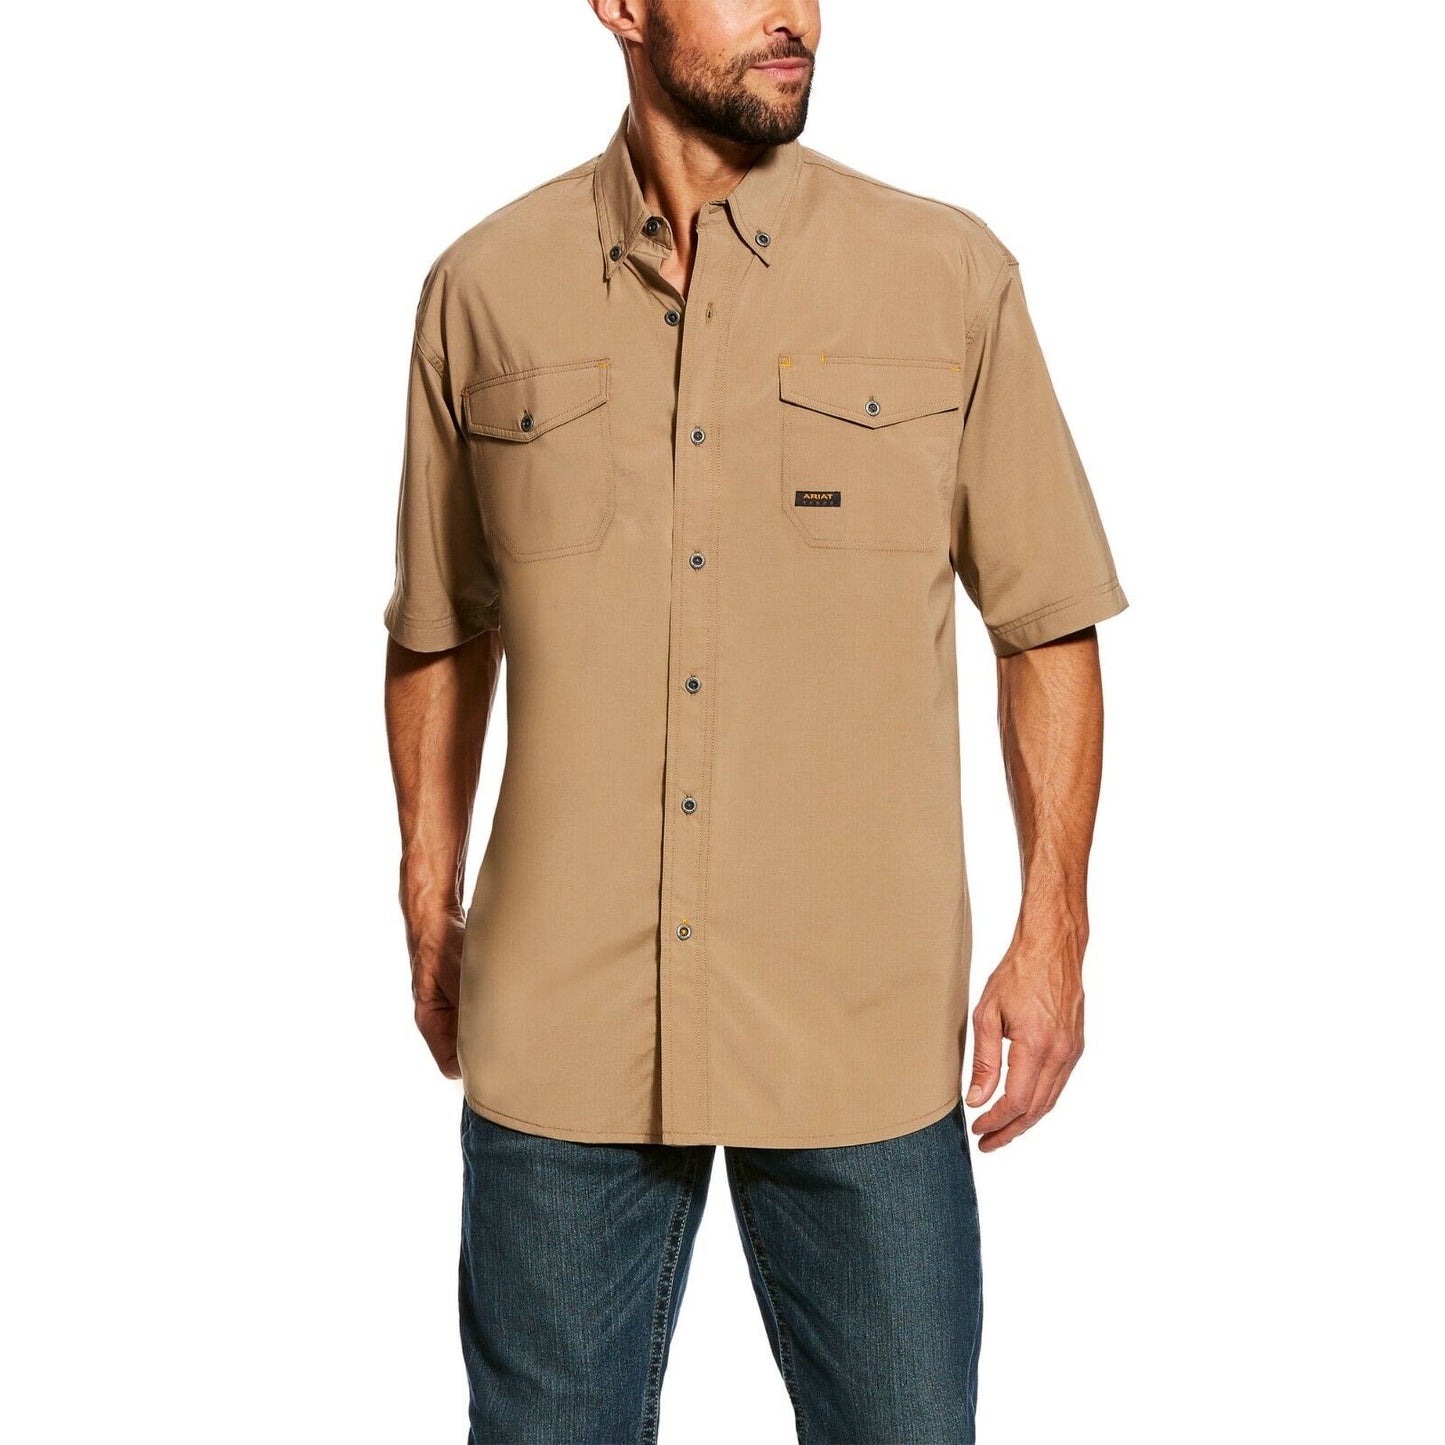 Ariat® Men's Rebar Made Tough VentTEK Short Sleeve Work Shirt 10025384